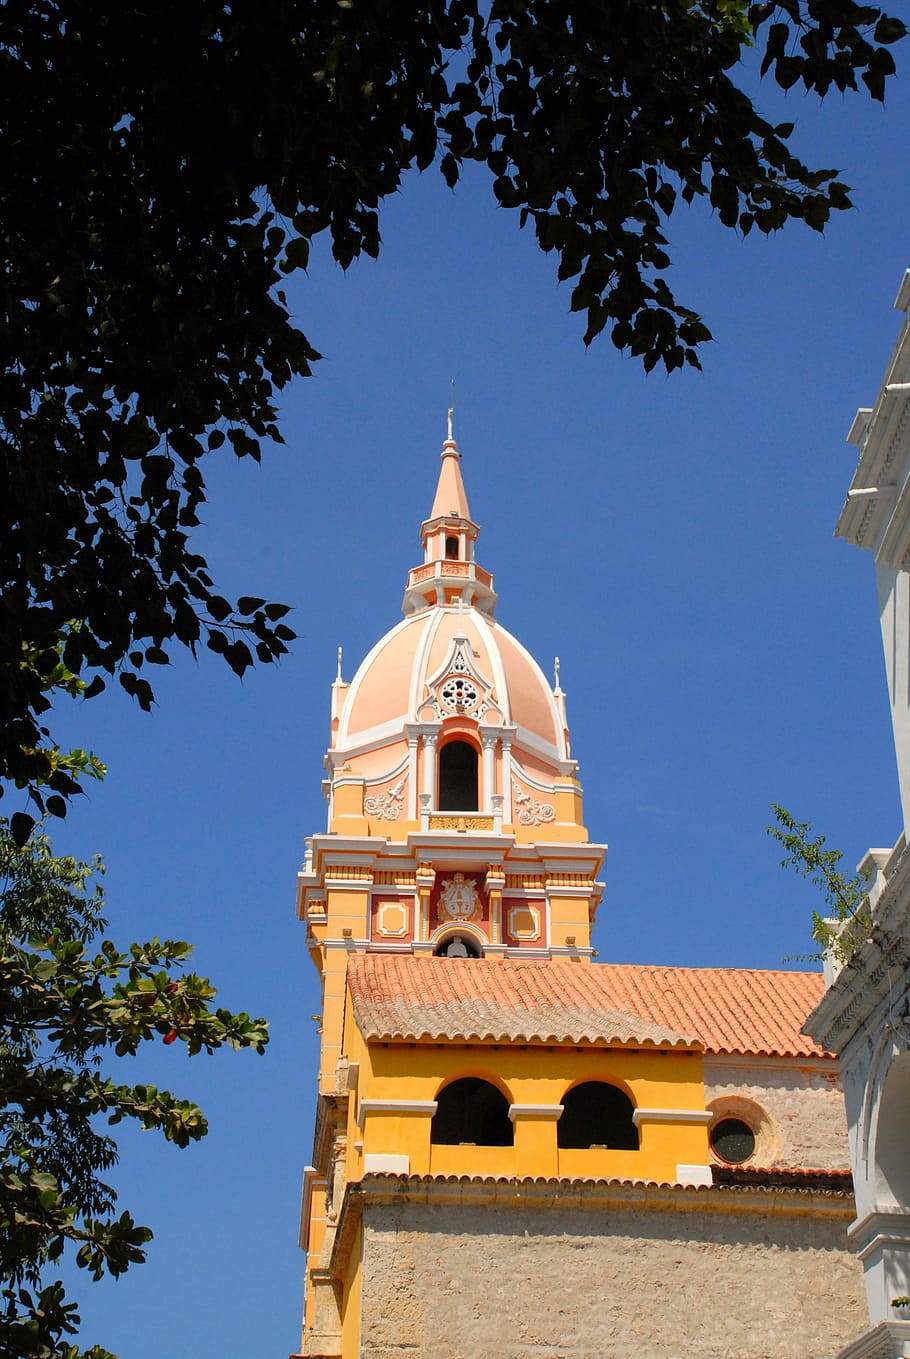 Cúpula, Cartagena, Colômbia, Igreja, fachada, religião, arquitetura, árvore, história, azul